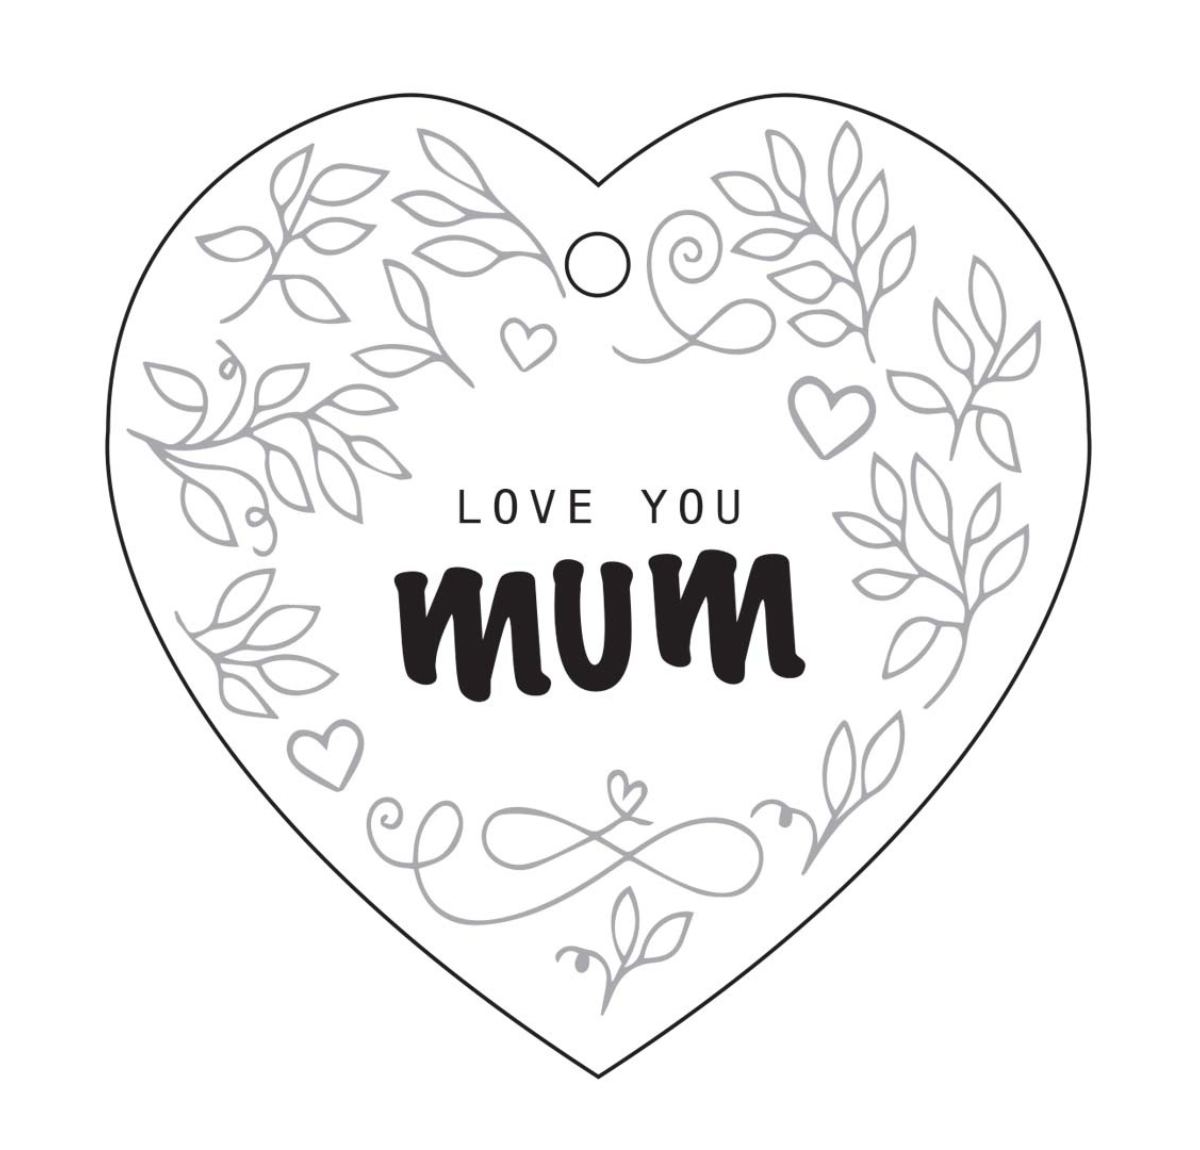 Mum Heart Ceramic Wall Hanging - White/Black